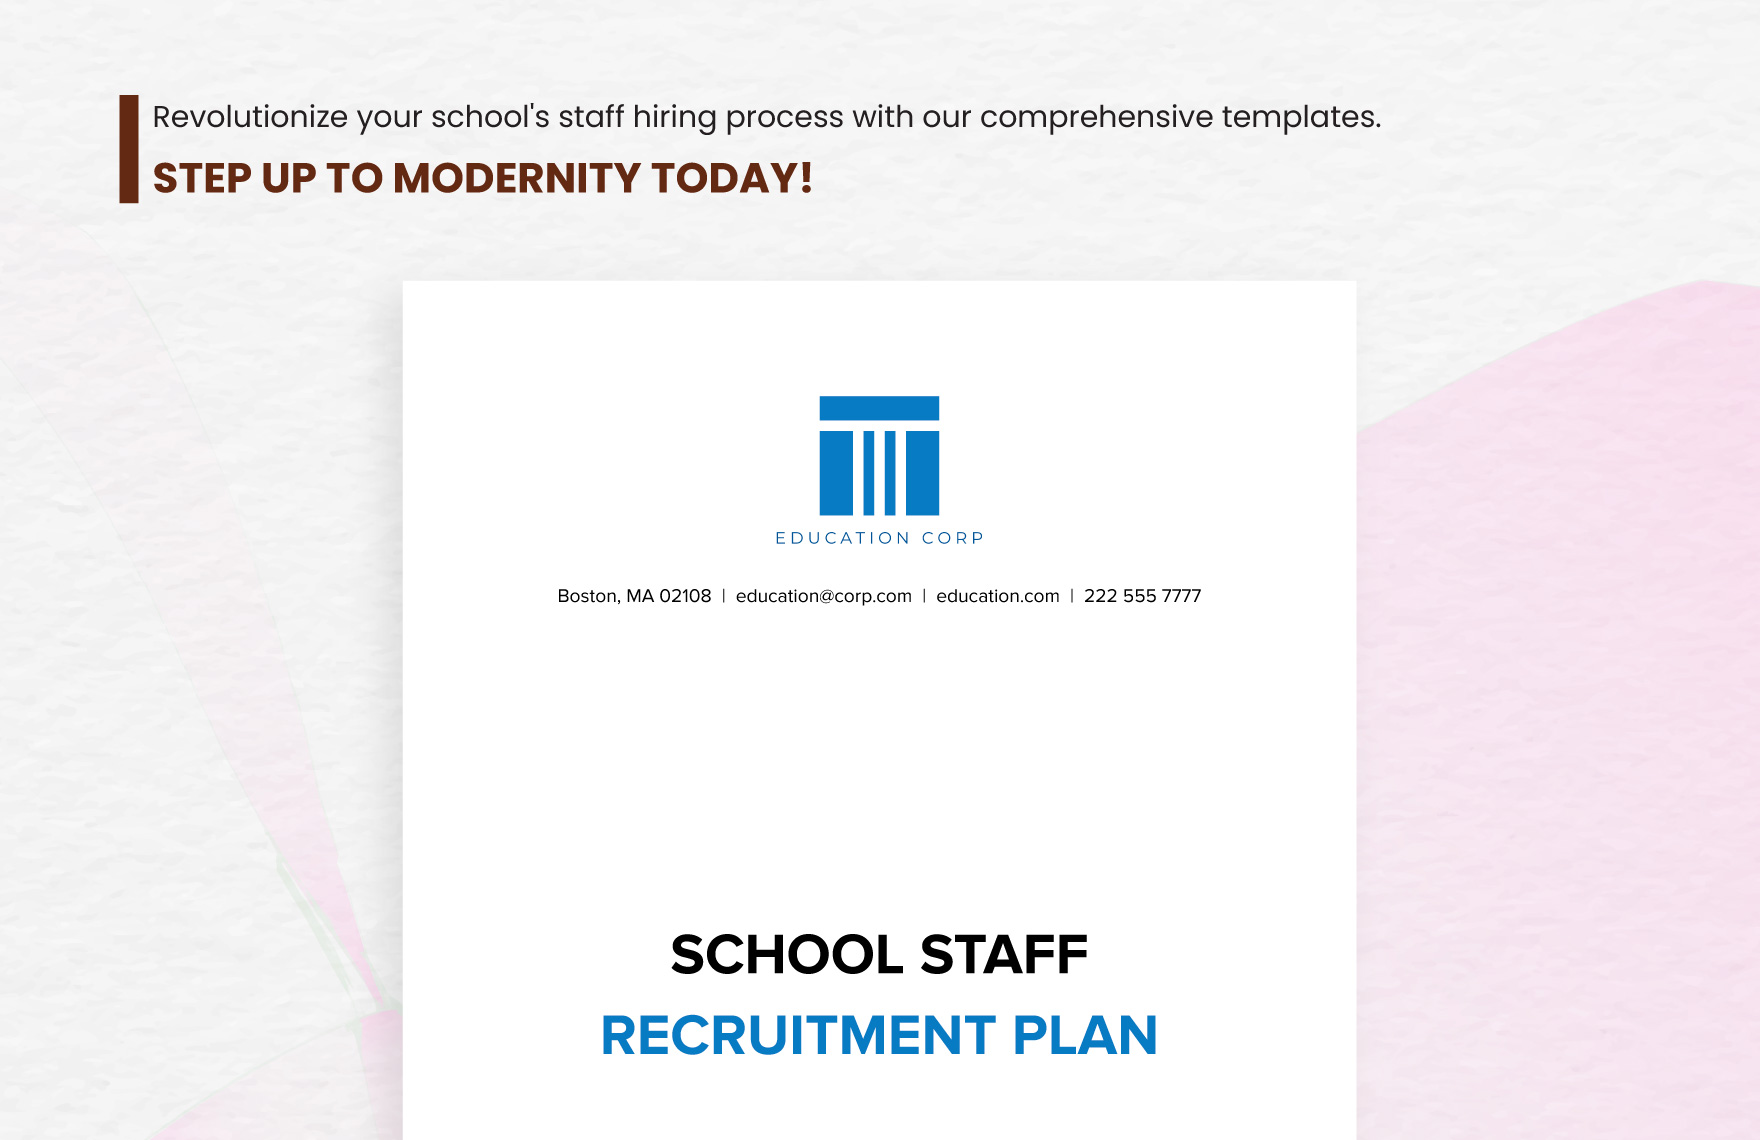 School Staff Recruitment Plan Template